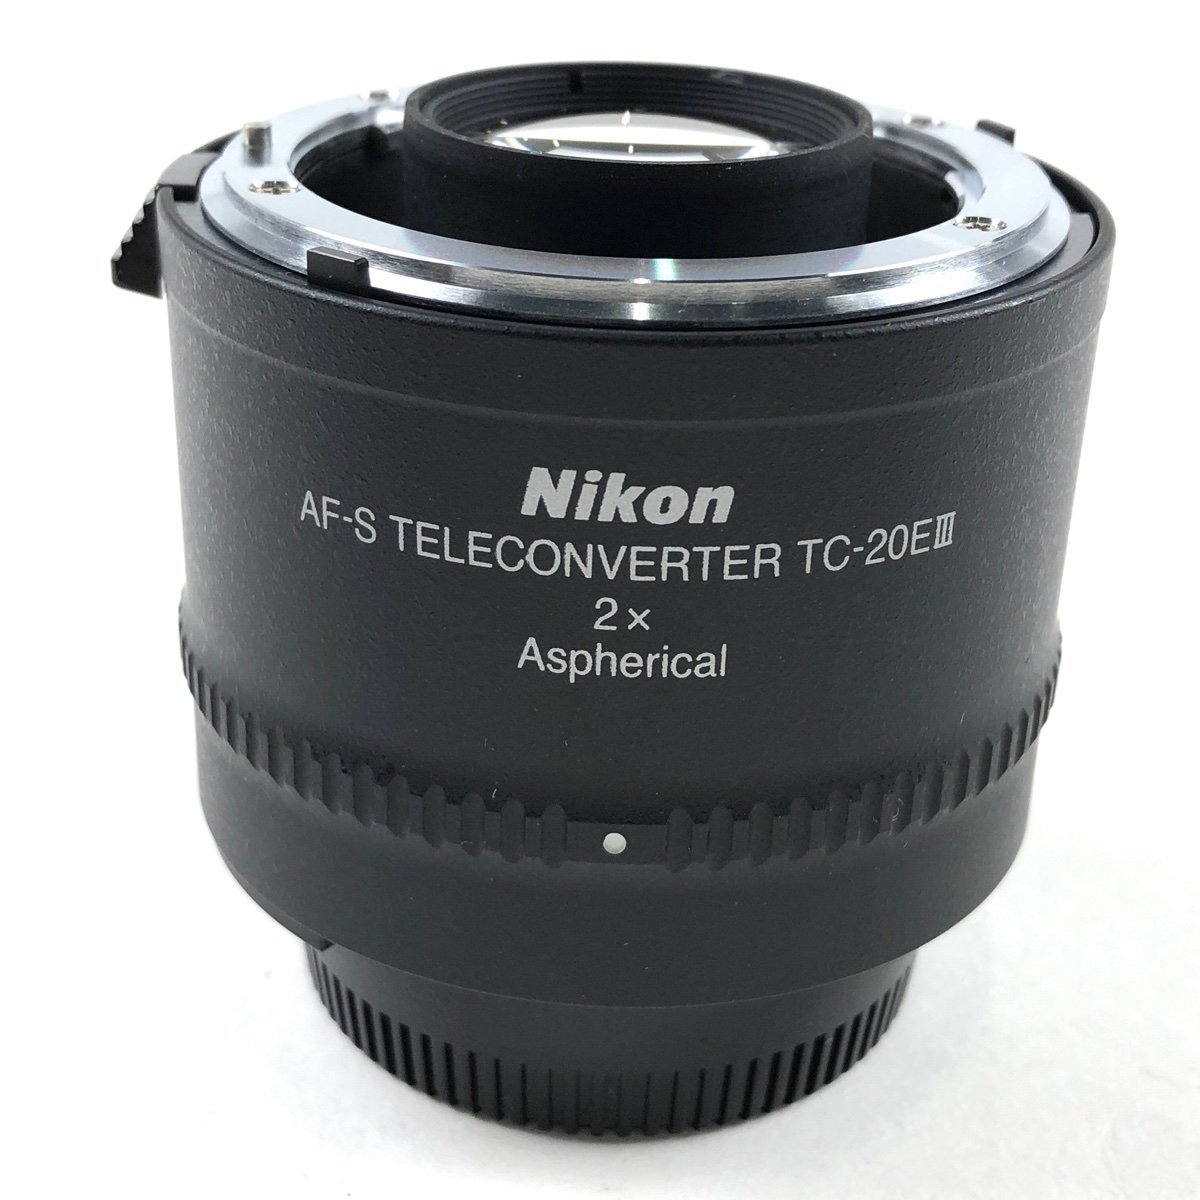 ニコン Nikon AF-S TELECONVERTER TC-20E III 2X テレコンバーター その他レンズ 【】 